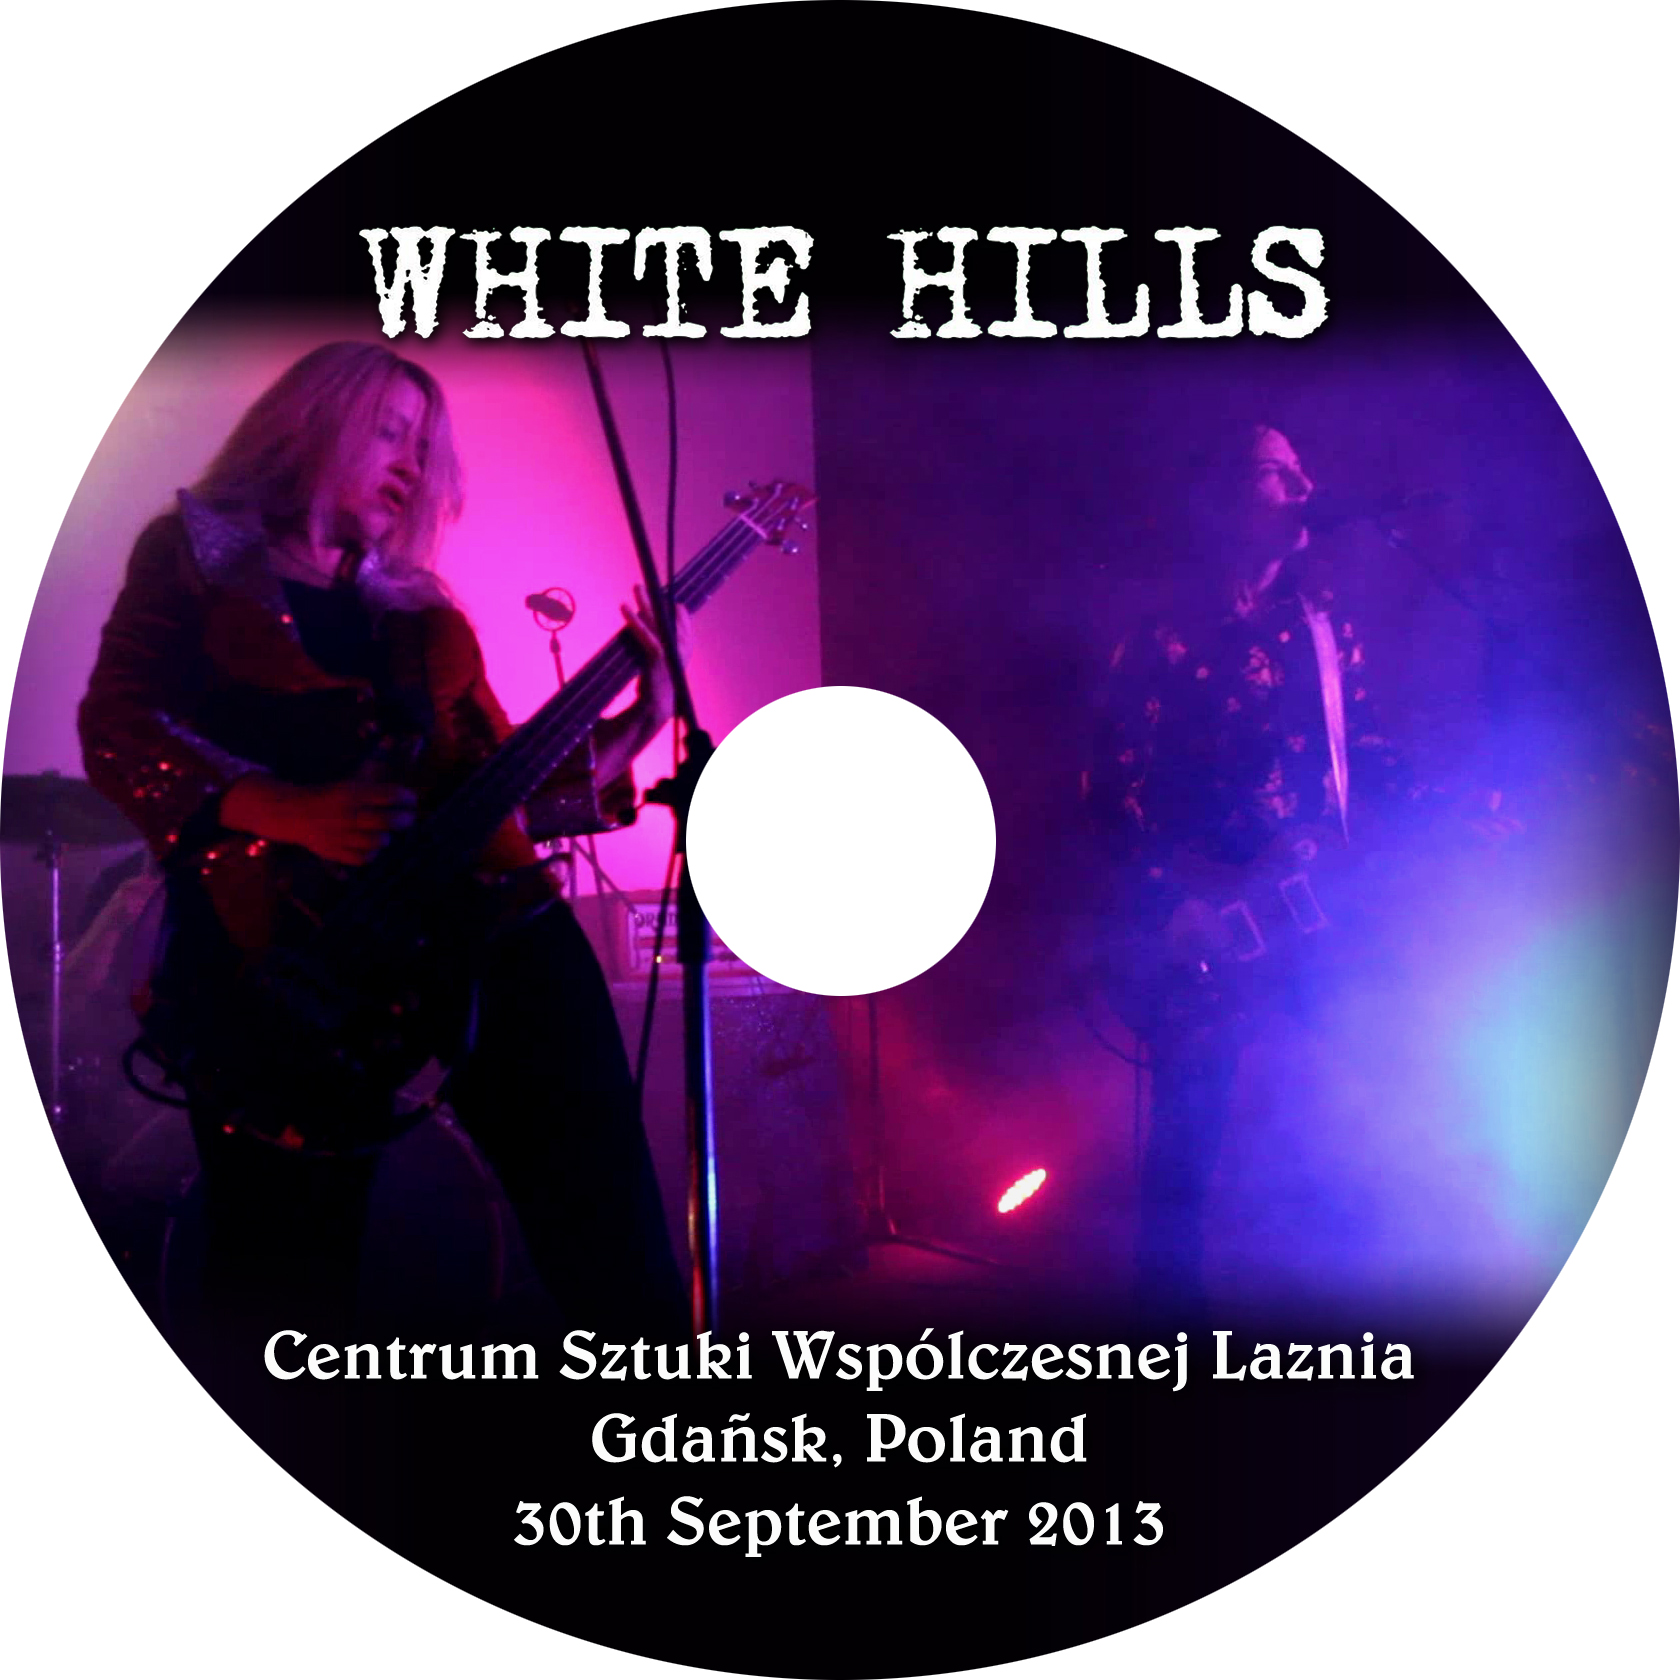 WhiteHills2013-09-30CentrumSztukiWspolczesnejLazniaGdanskPoland (7).jpg